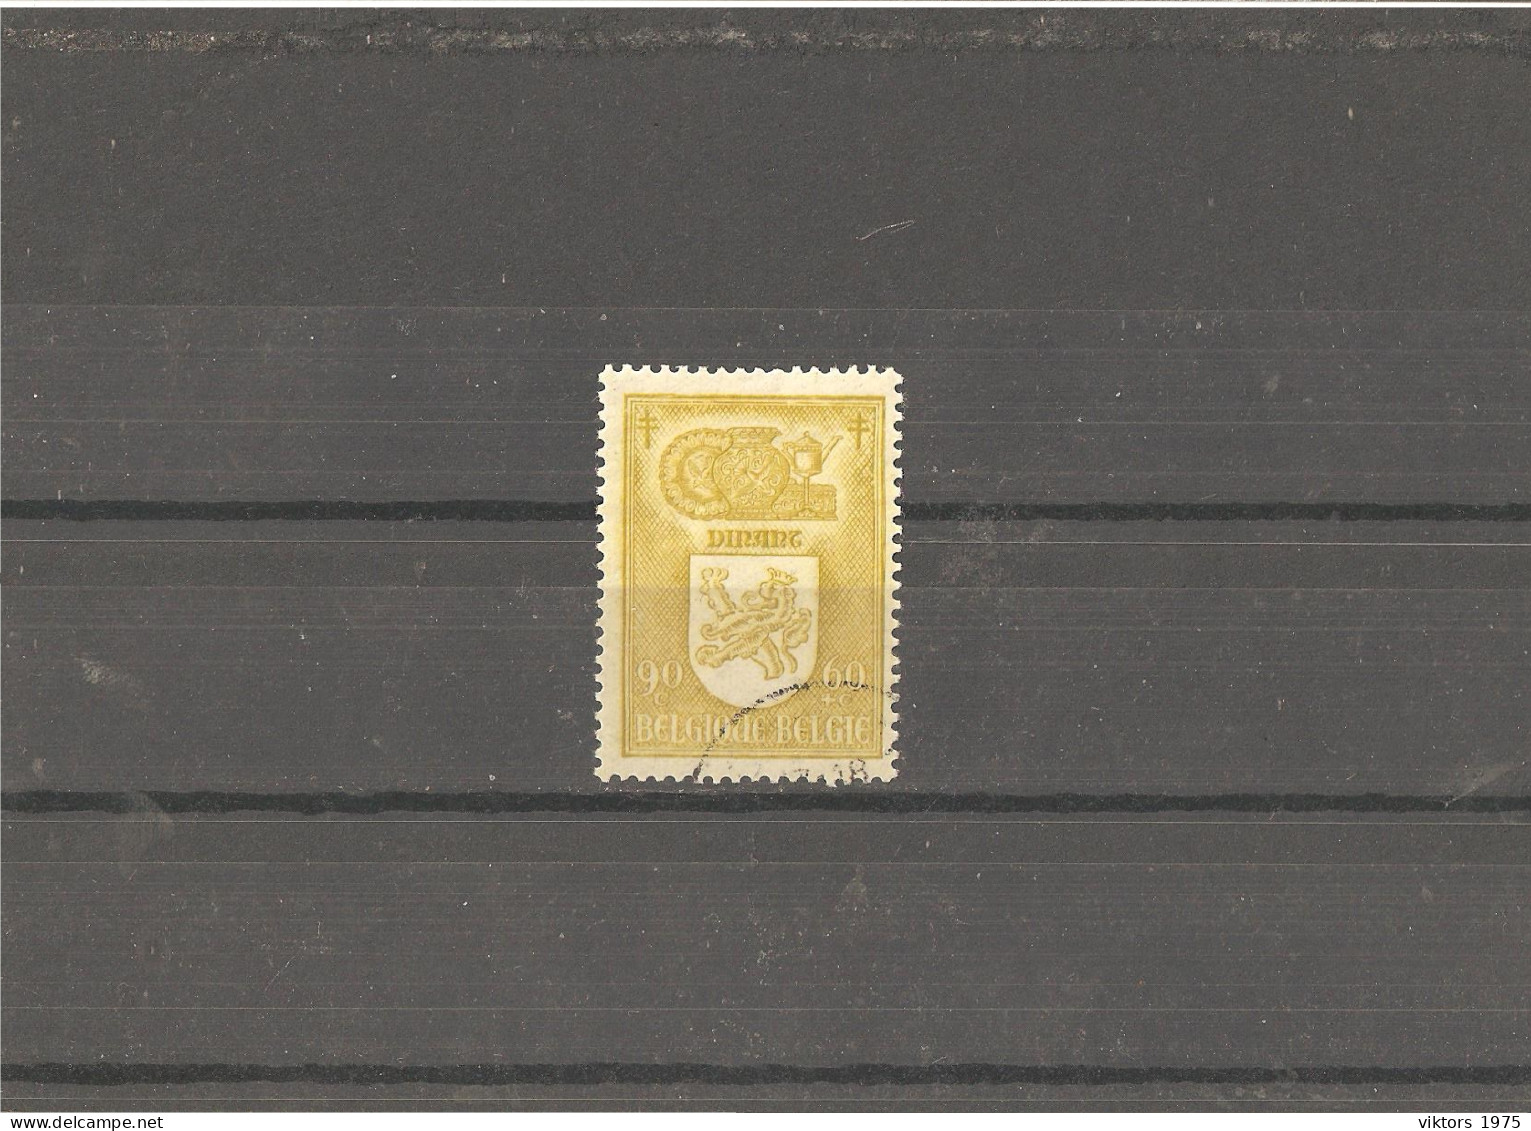 Used Stamp Nr.777 In MICHEL Catalog - Usati